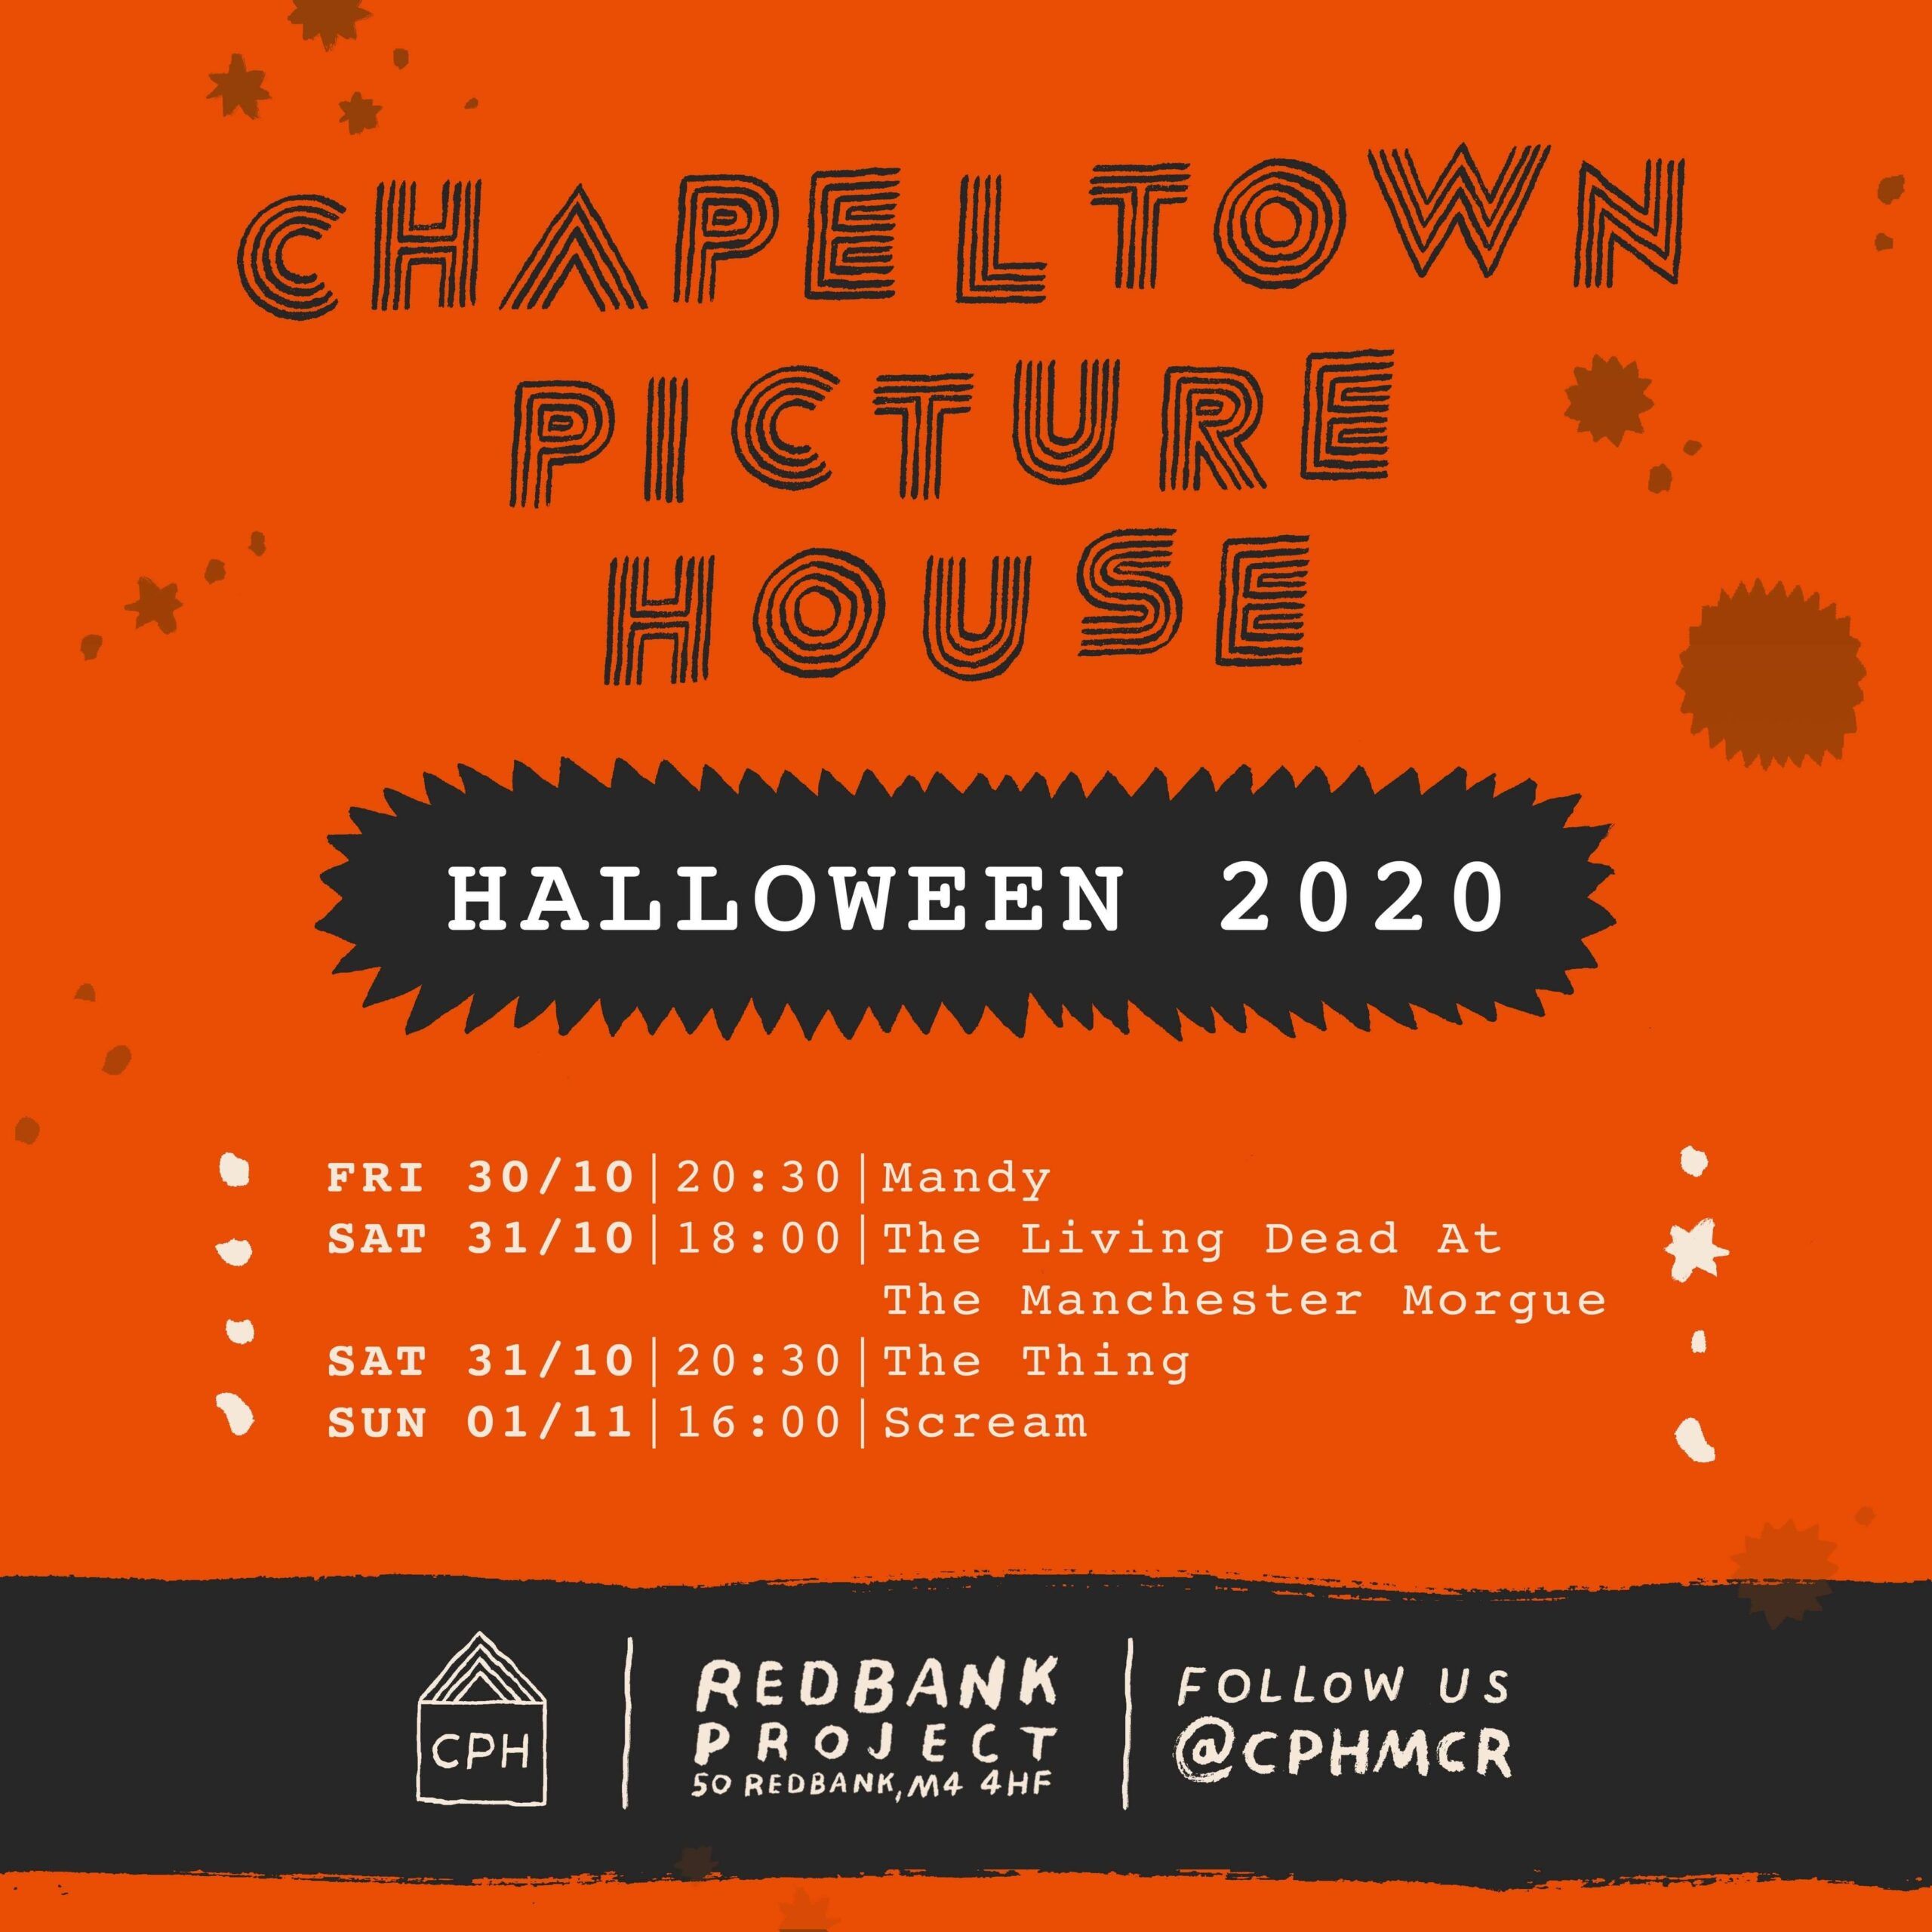 Orange background featuring a halloween screening schedule